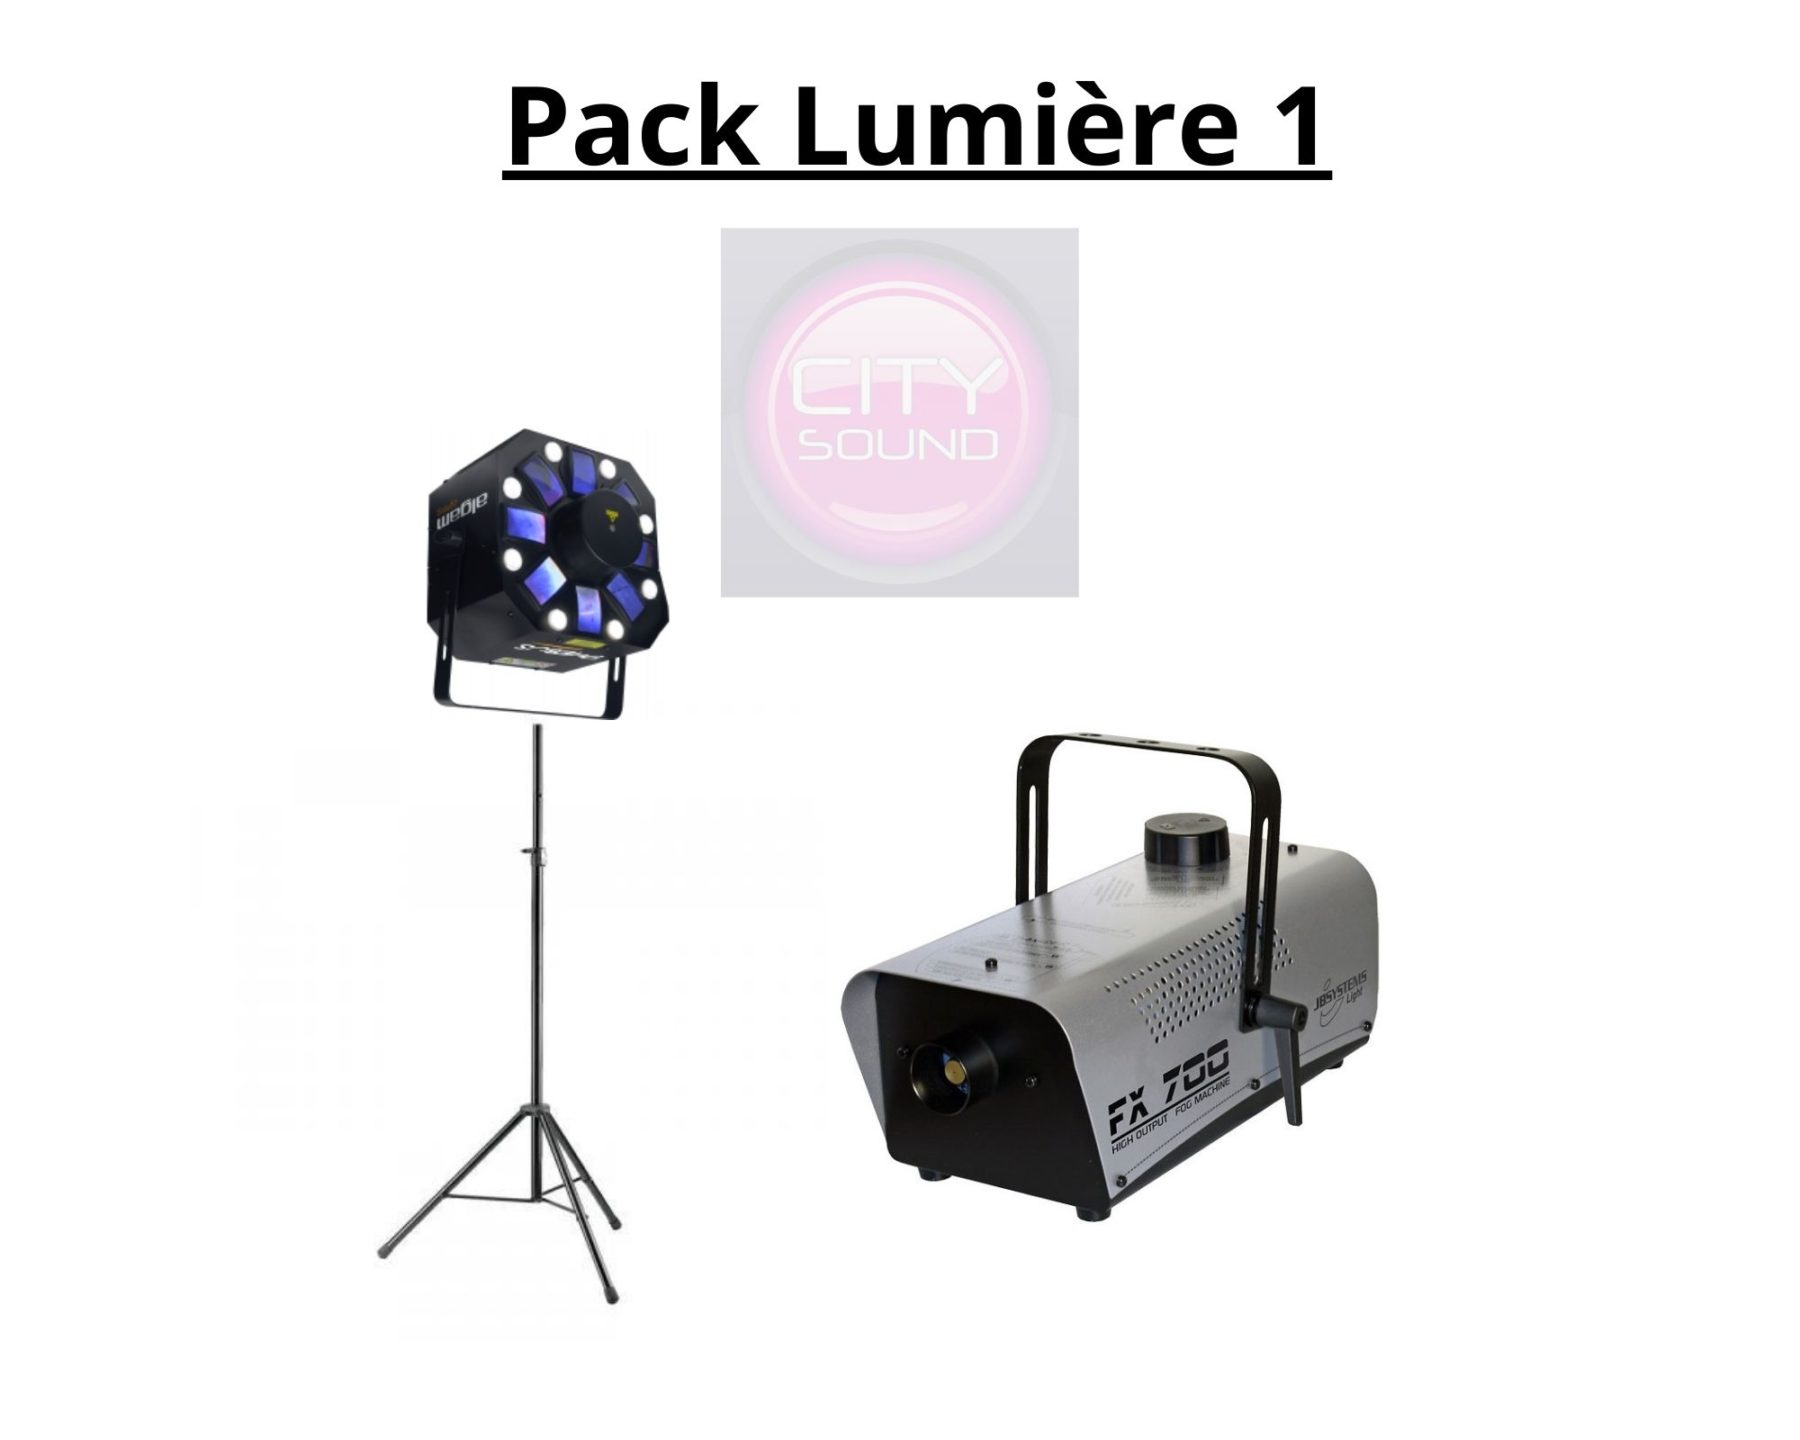 pack lumiere 1 - Accueil - Quimper Brest